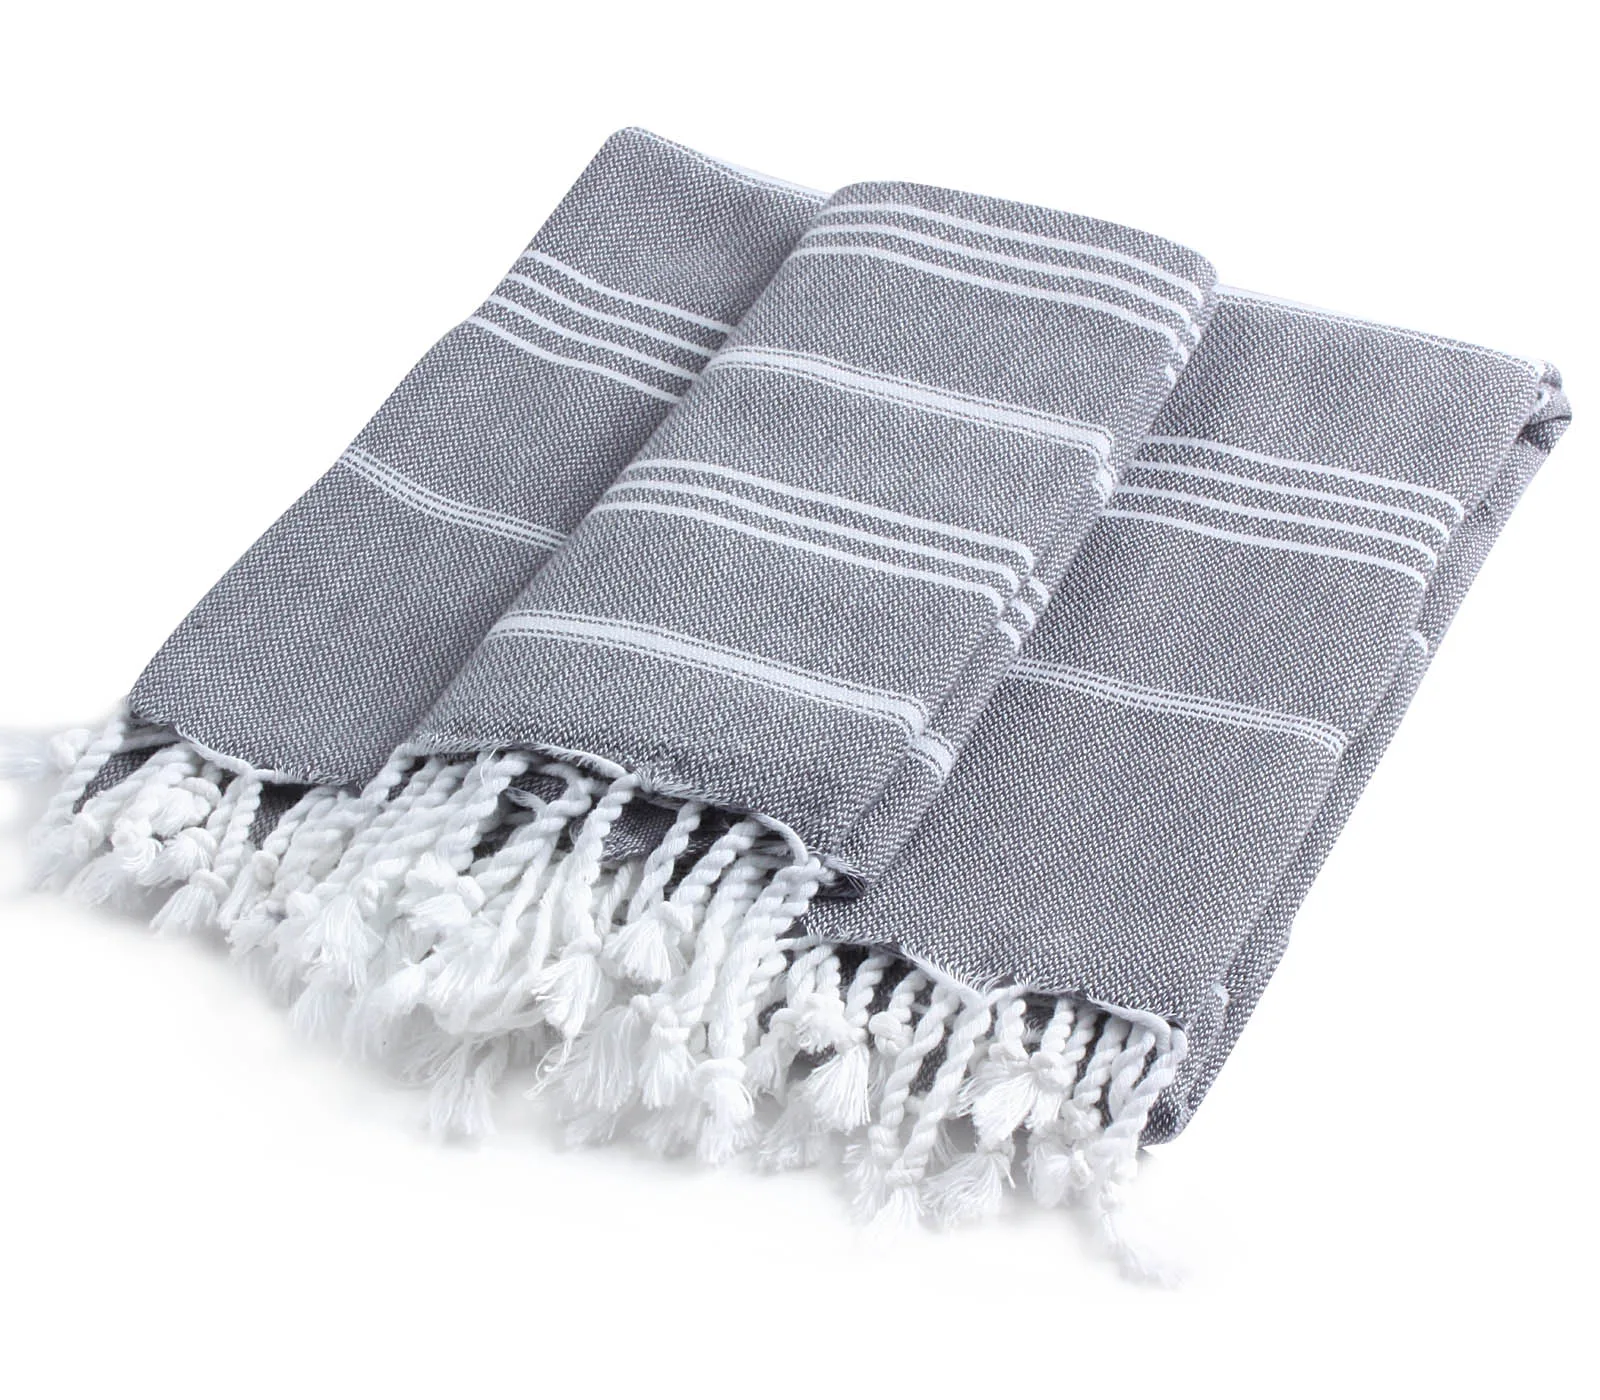 

CACALA %100 Cotton 2 Pieces Turkish Towel Pestemal Set - 1 Piece 100x180Cm Bath Beach Towel 1 Piece 60x90Cm Hand Face Towel